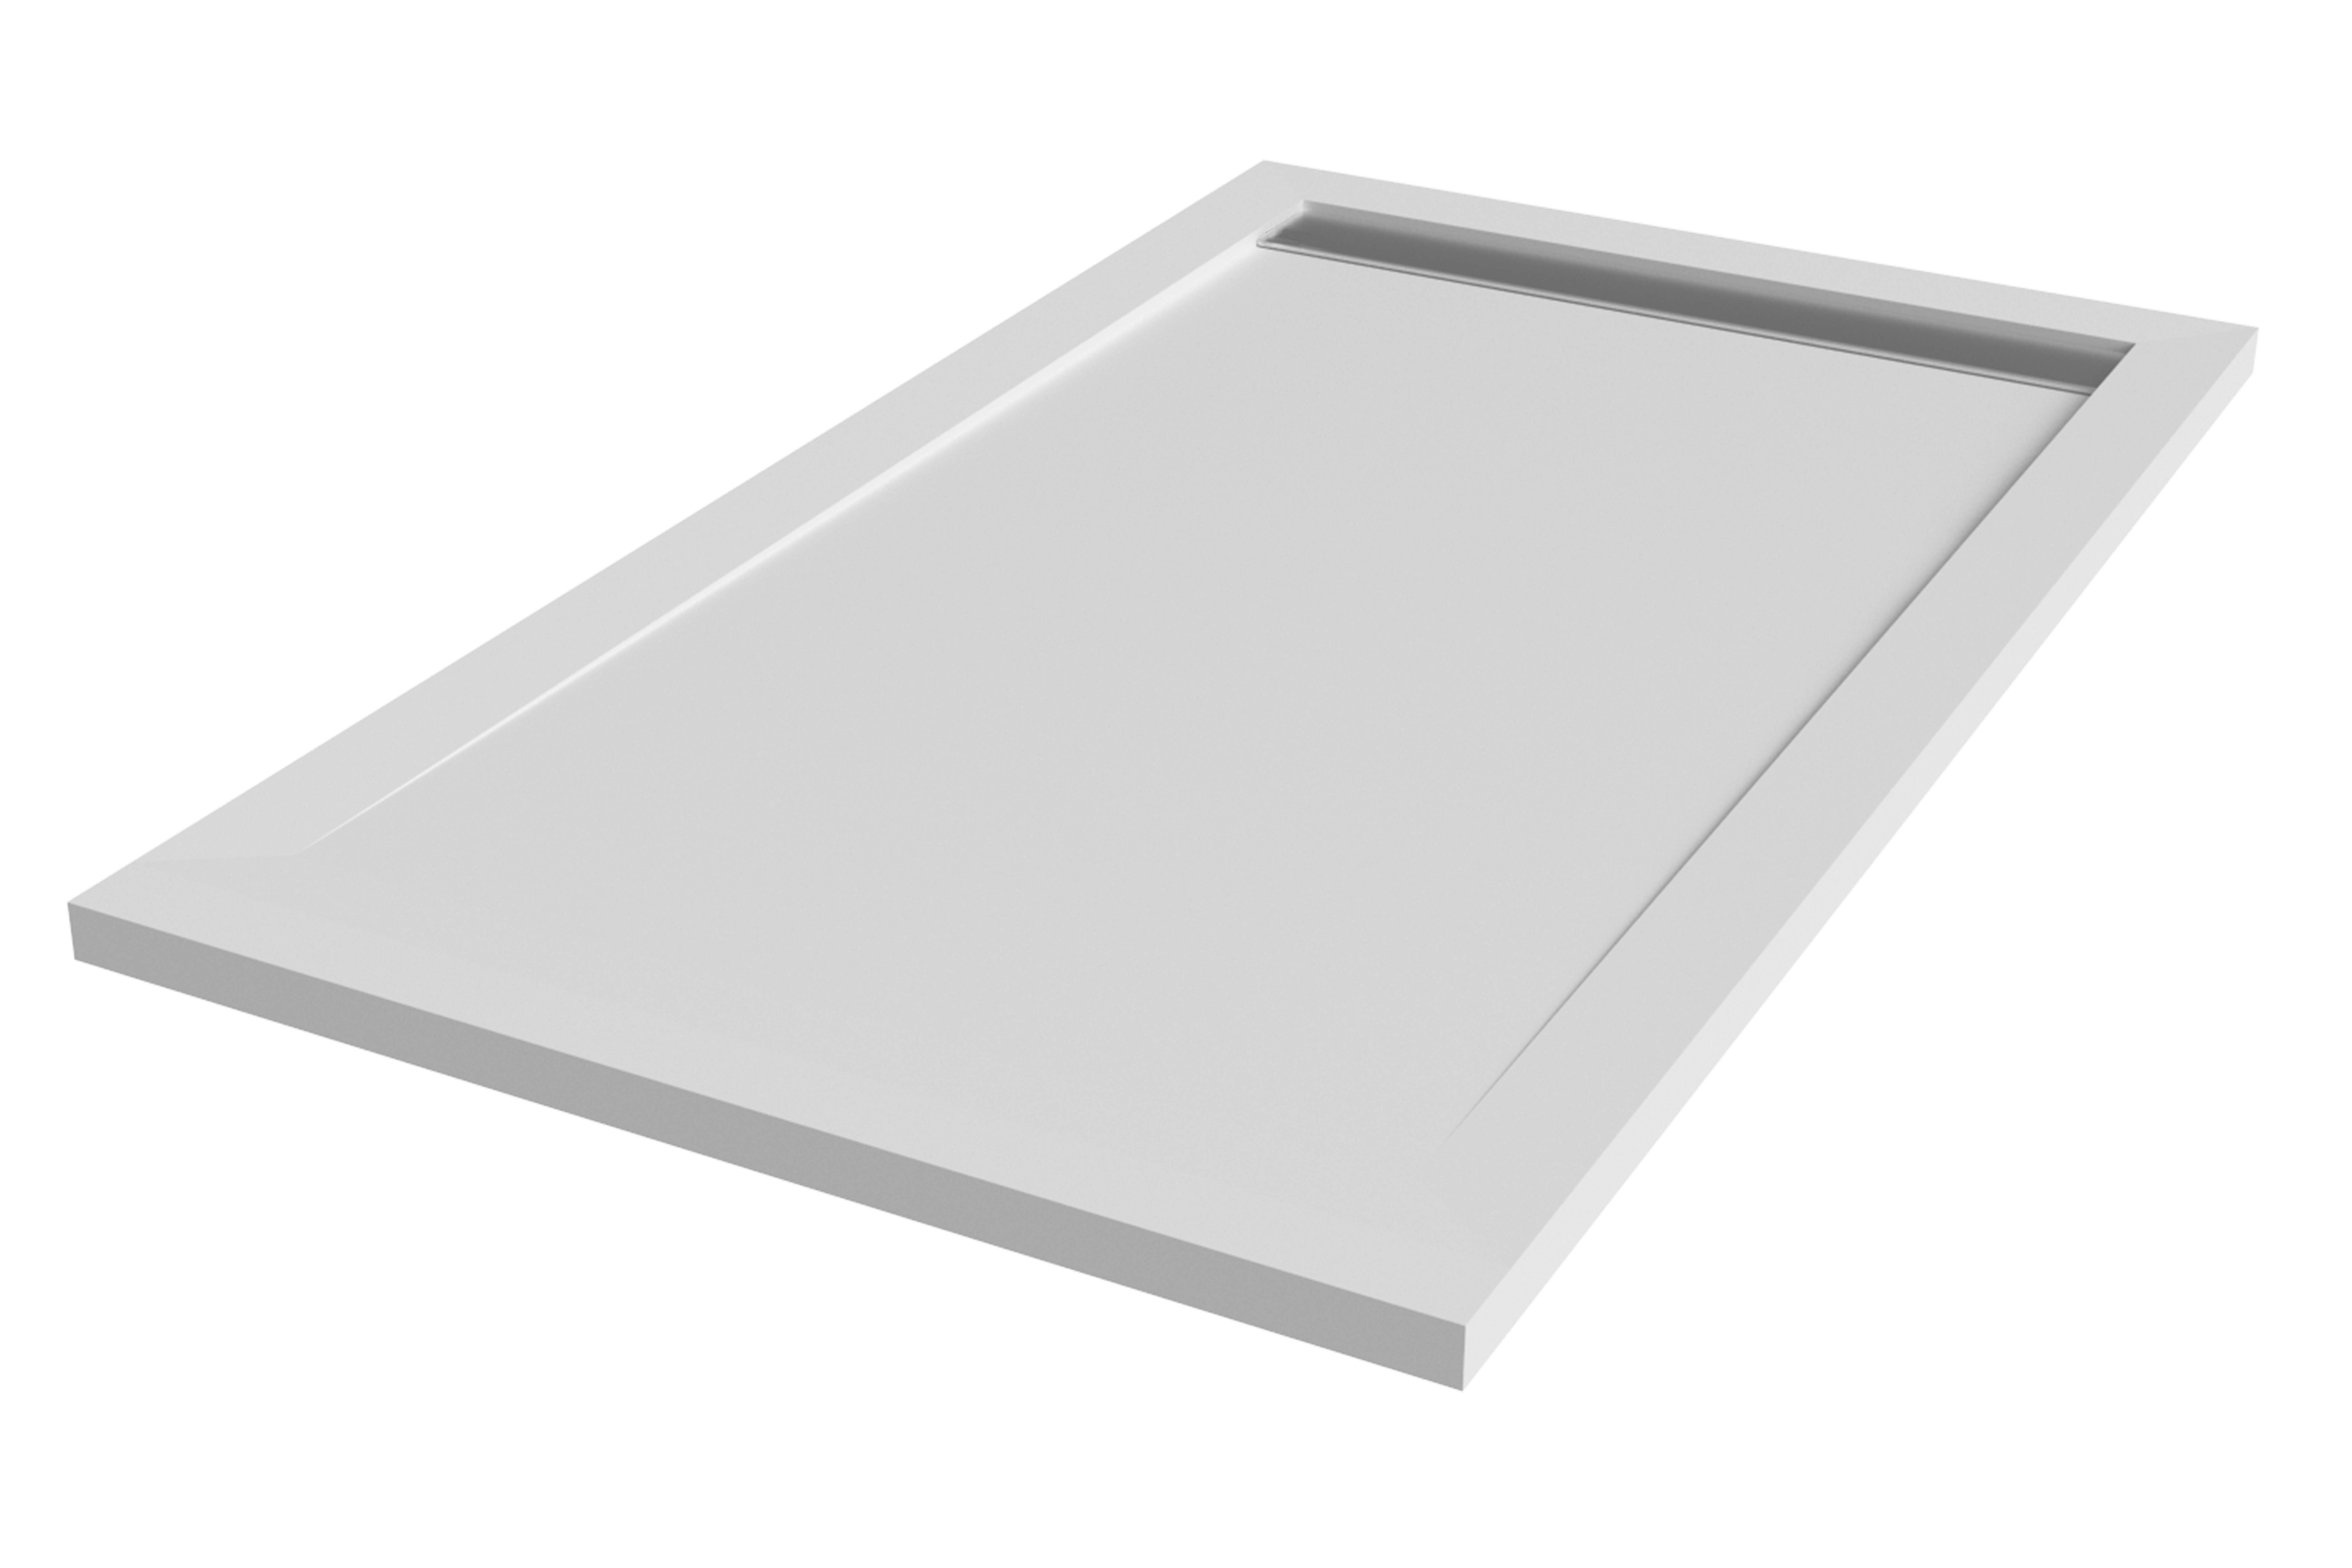 Plato de ducha kaliso 180x70 cm blanco